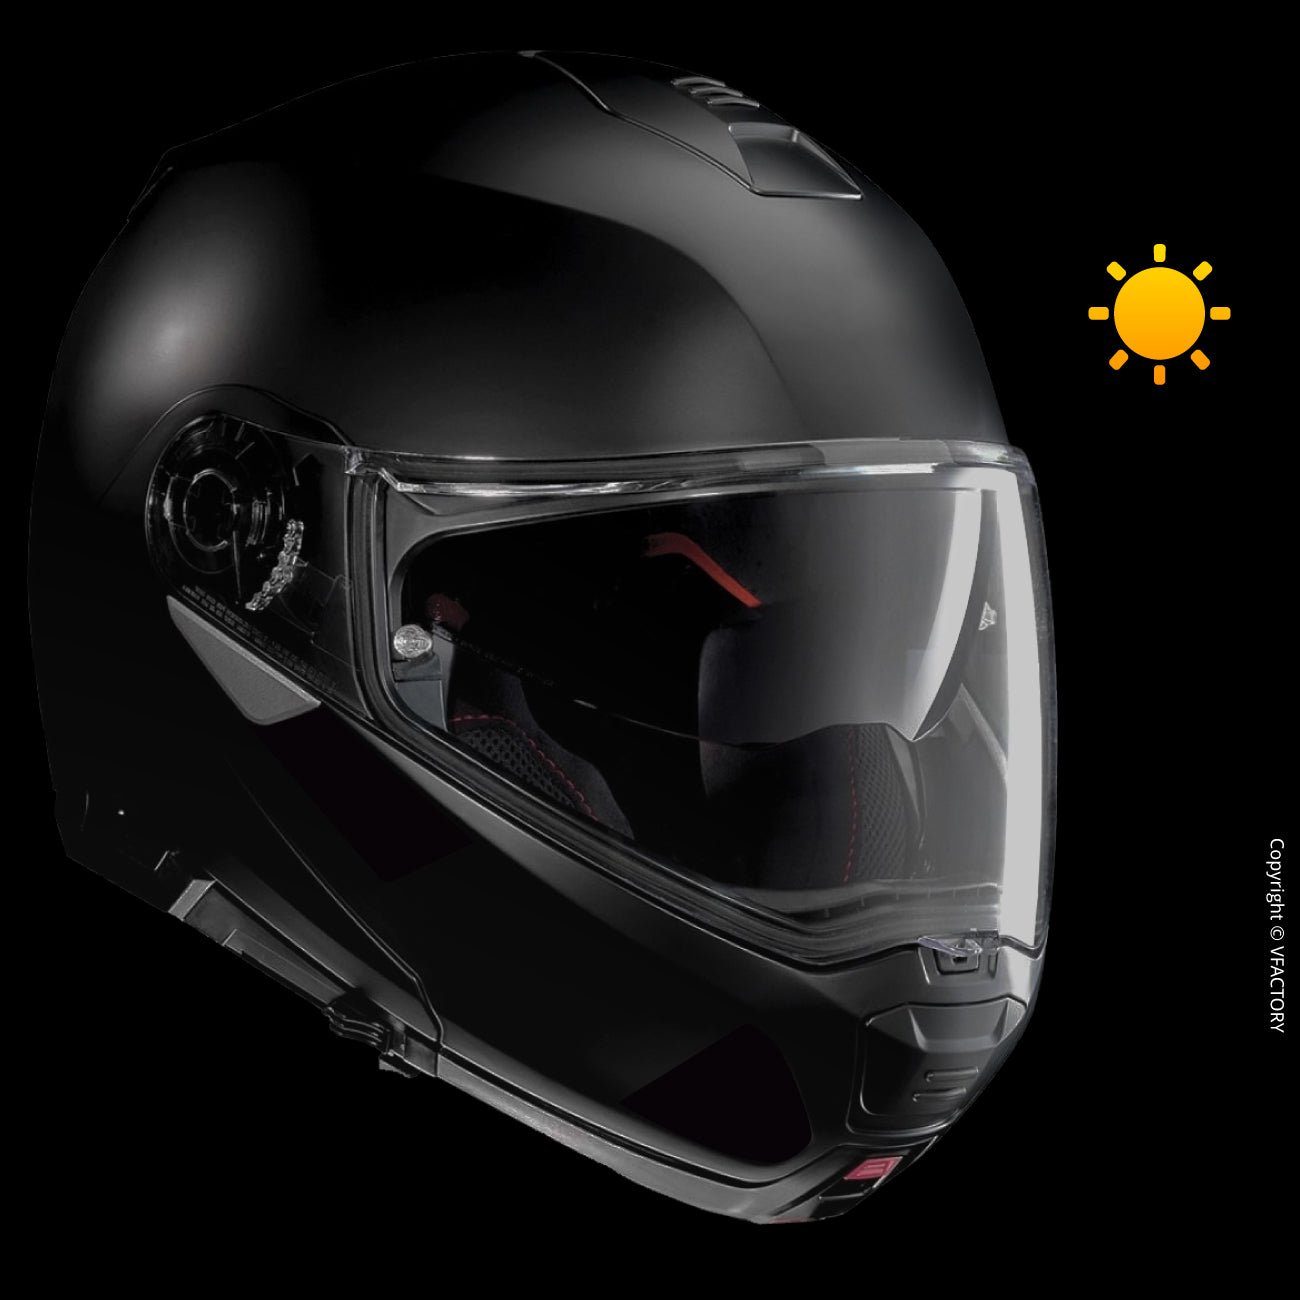  VFLUO - 2 x Kit 4 Bandes Stickers Noirs Rétro Réfléchissants  pour Casque Moto - Autocollants Homologués Dimensions FR - Haute  Visibilité, Technologie 3M™ - Discret et Design - Adhérence maximale